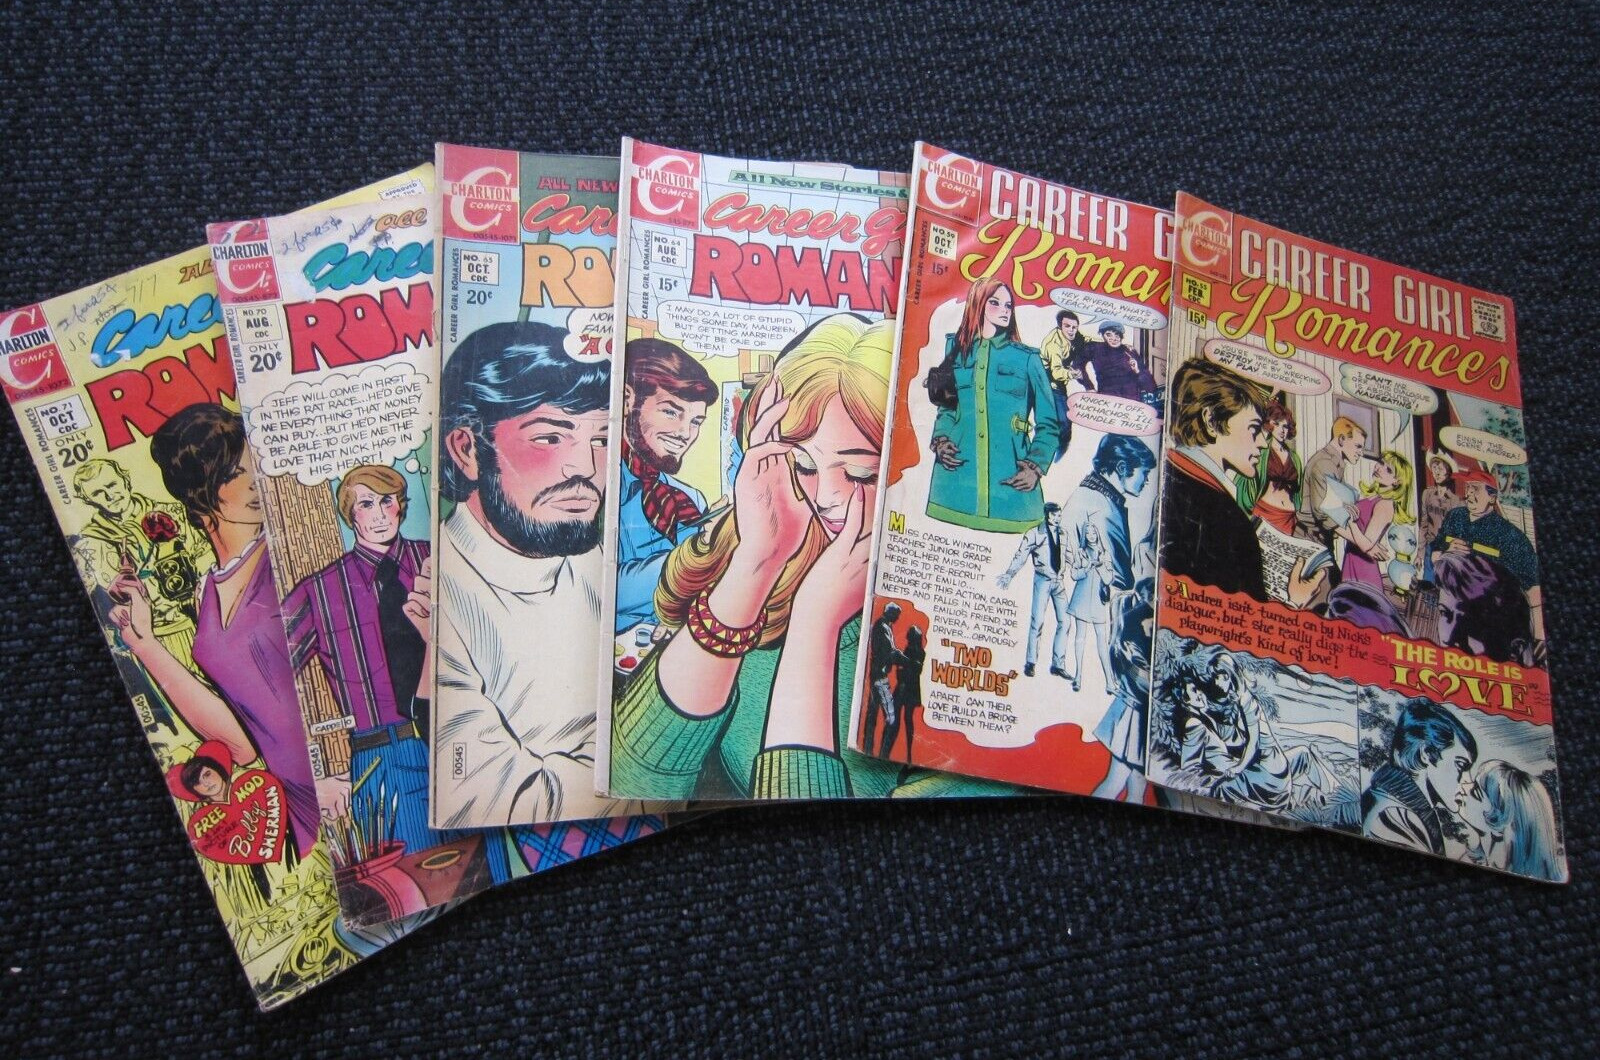 Career Girl Romances comic lot - 1970 & up